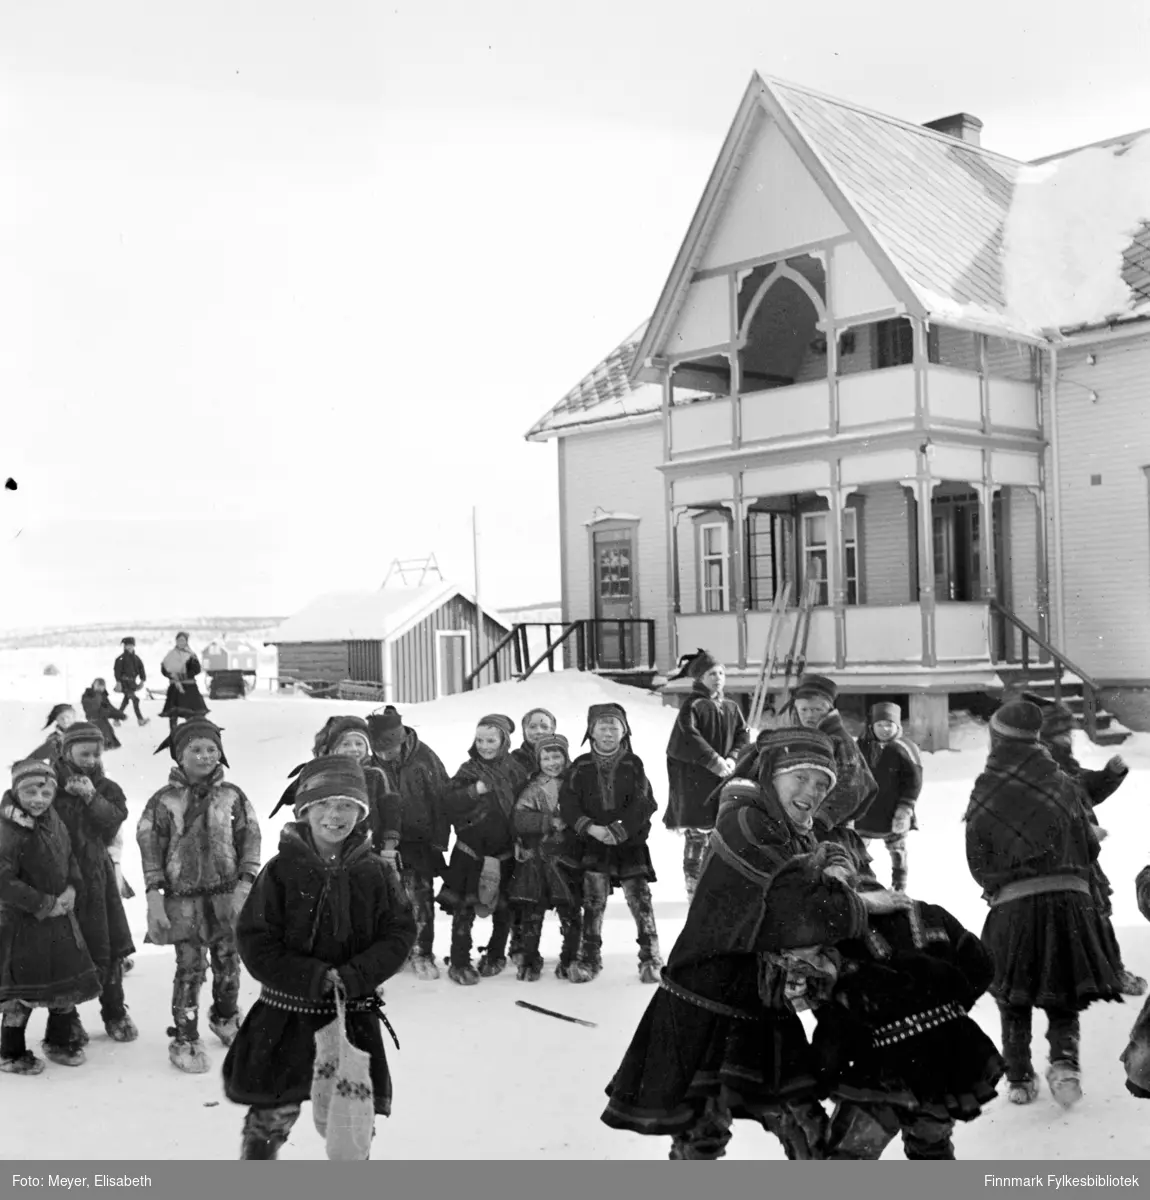 Internatstyrerboligen i Kautokeino, fotografert før krigen i perioden 1939-40. Samiske skolebarn leker i snøen utenfor. Til venstre i bildet bak ser man to voksne, muligens lærer og lærerinne. Alle barna er kledd i kofte eller pesk. I bakgrunnen står det også to par ski lent mot huset.